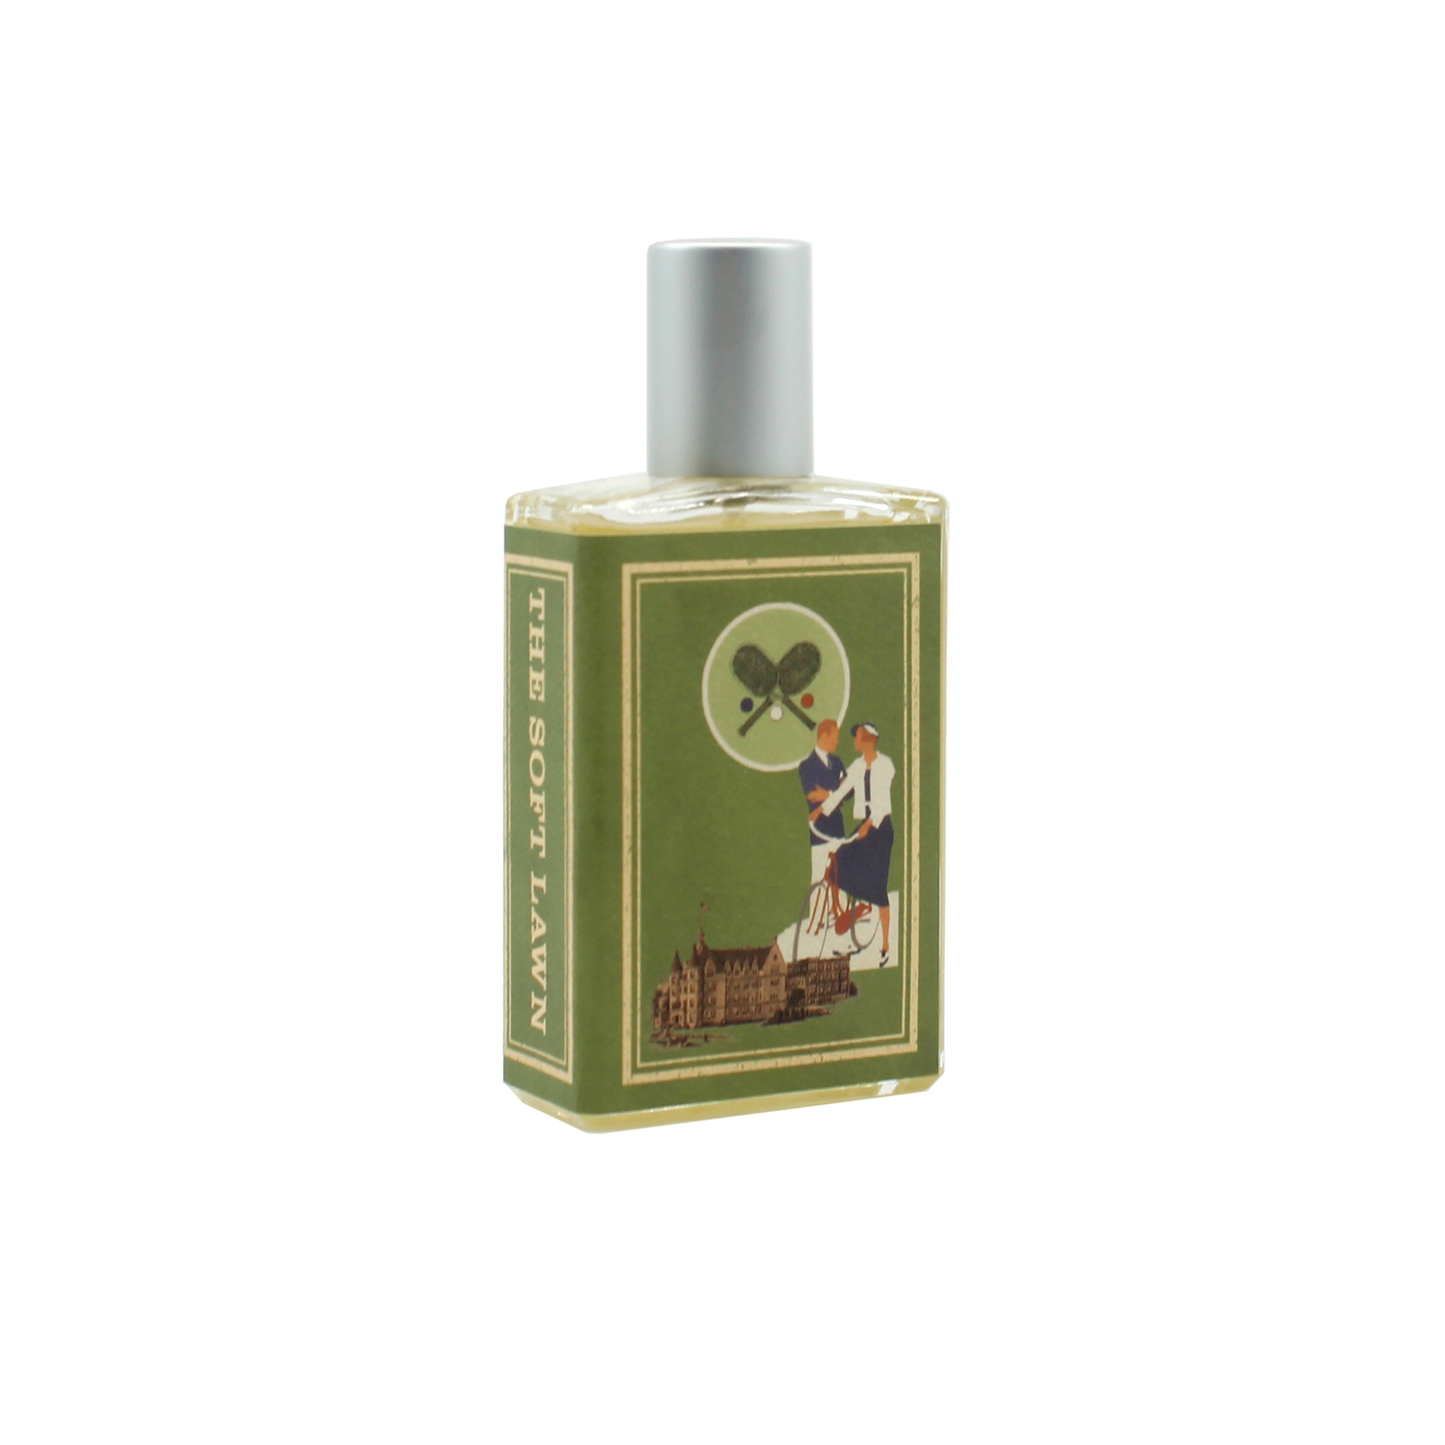 The Soft Lawn .5 oz Eau de Parfum - Travel Spray